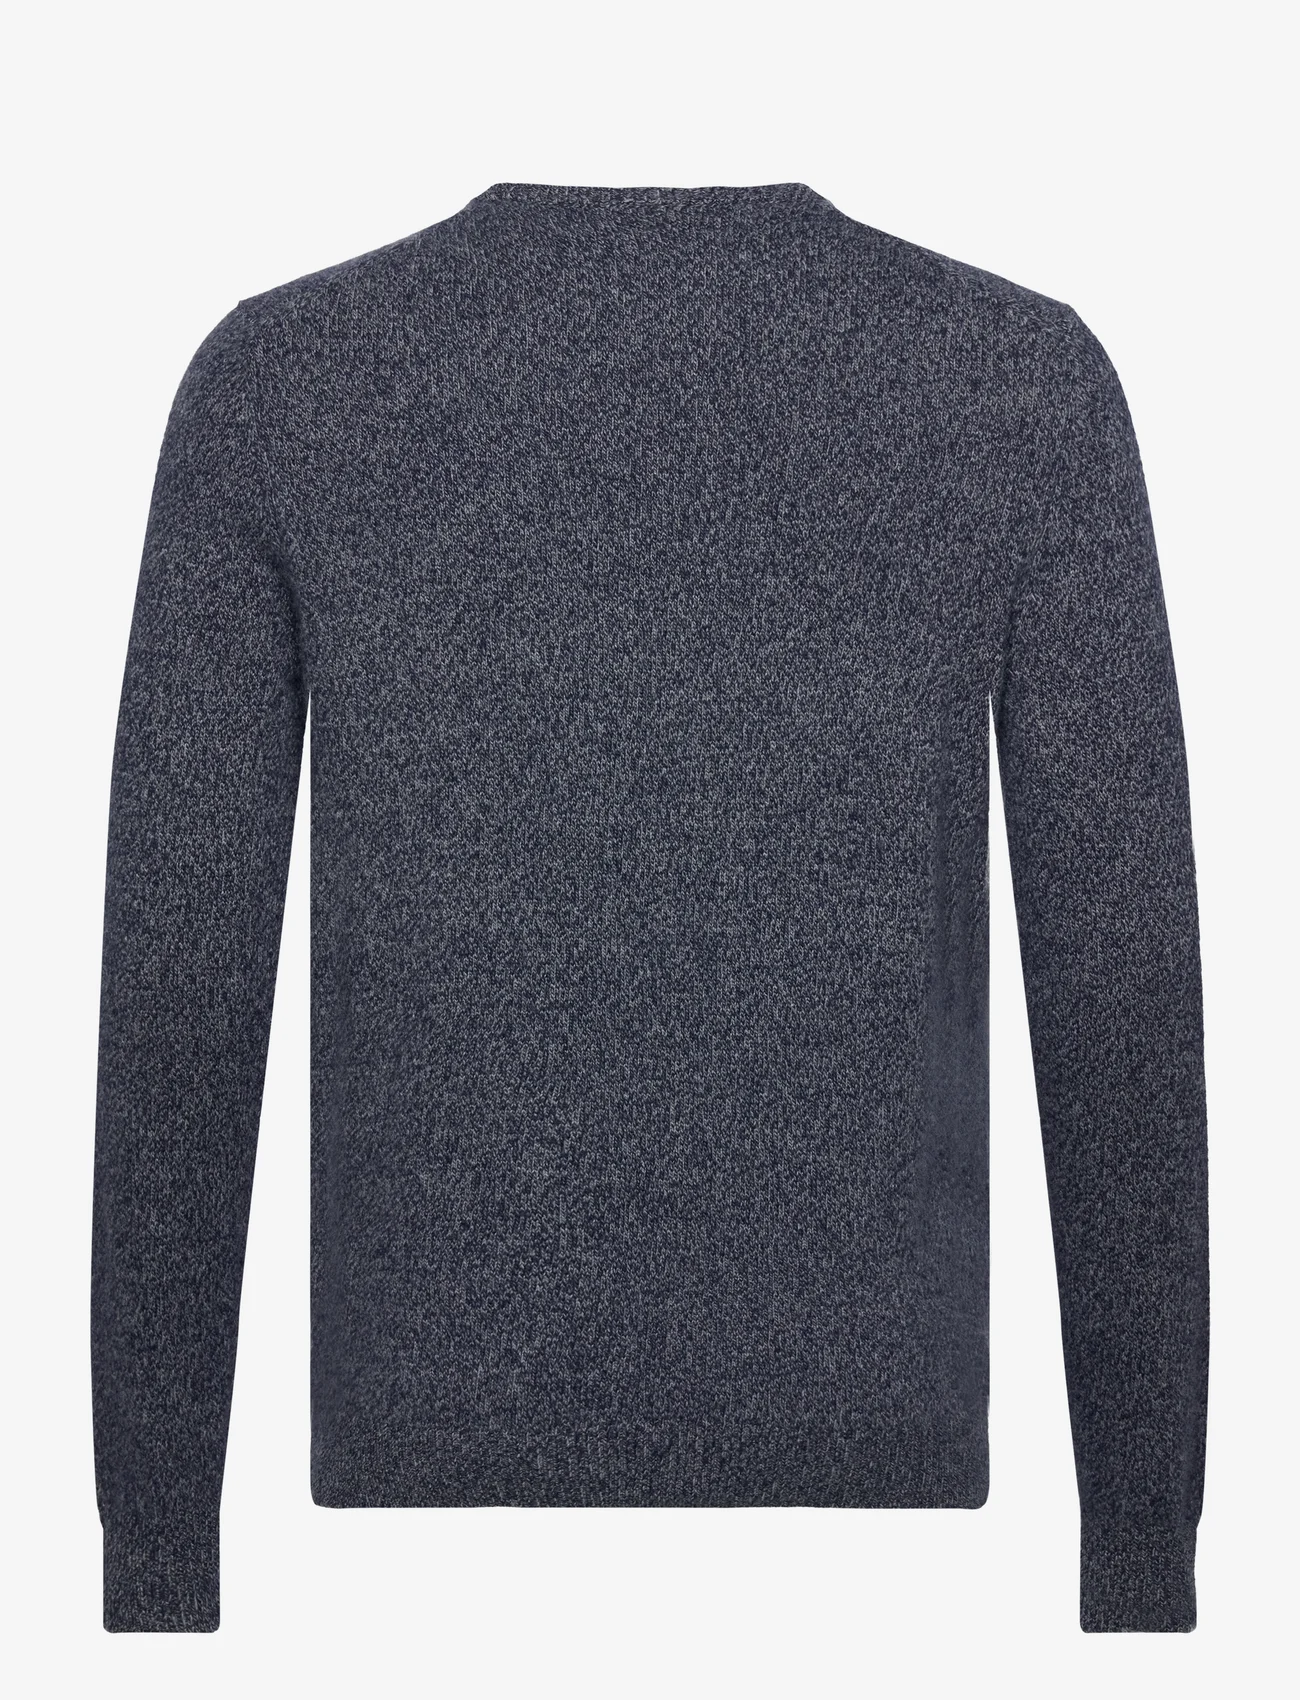 Hackett London - LW MOULINE CREW - knitted round necks - navy/grey - 1